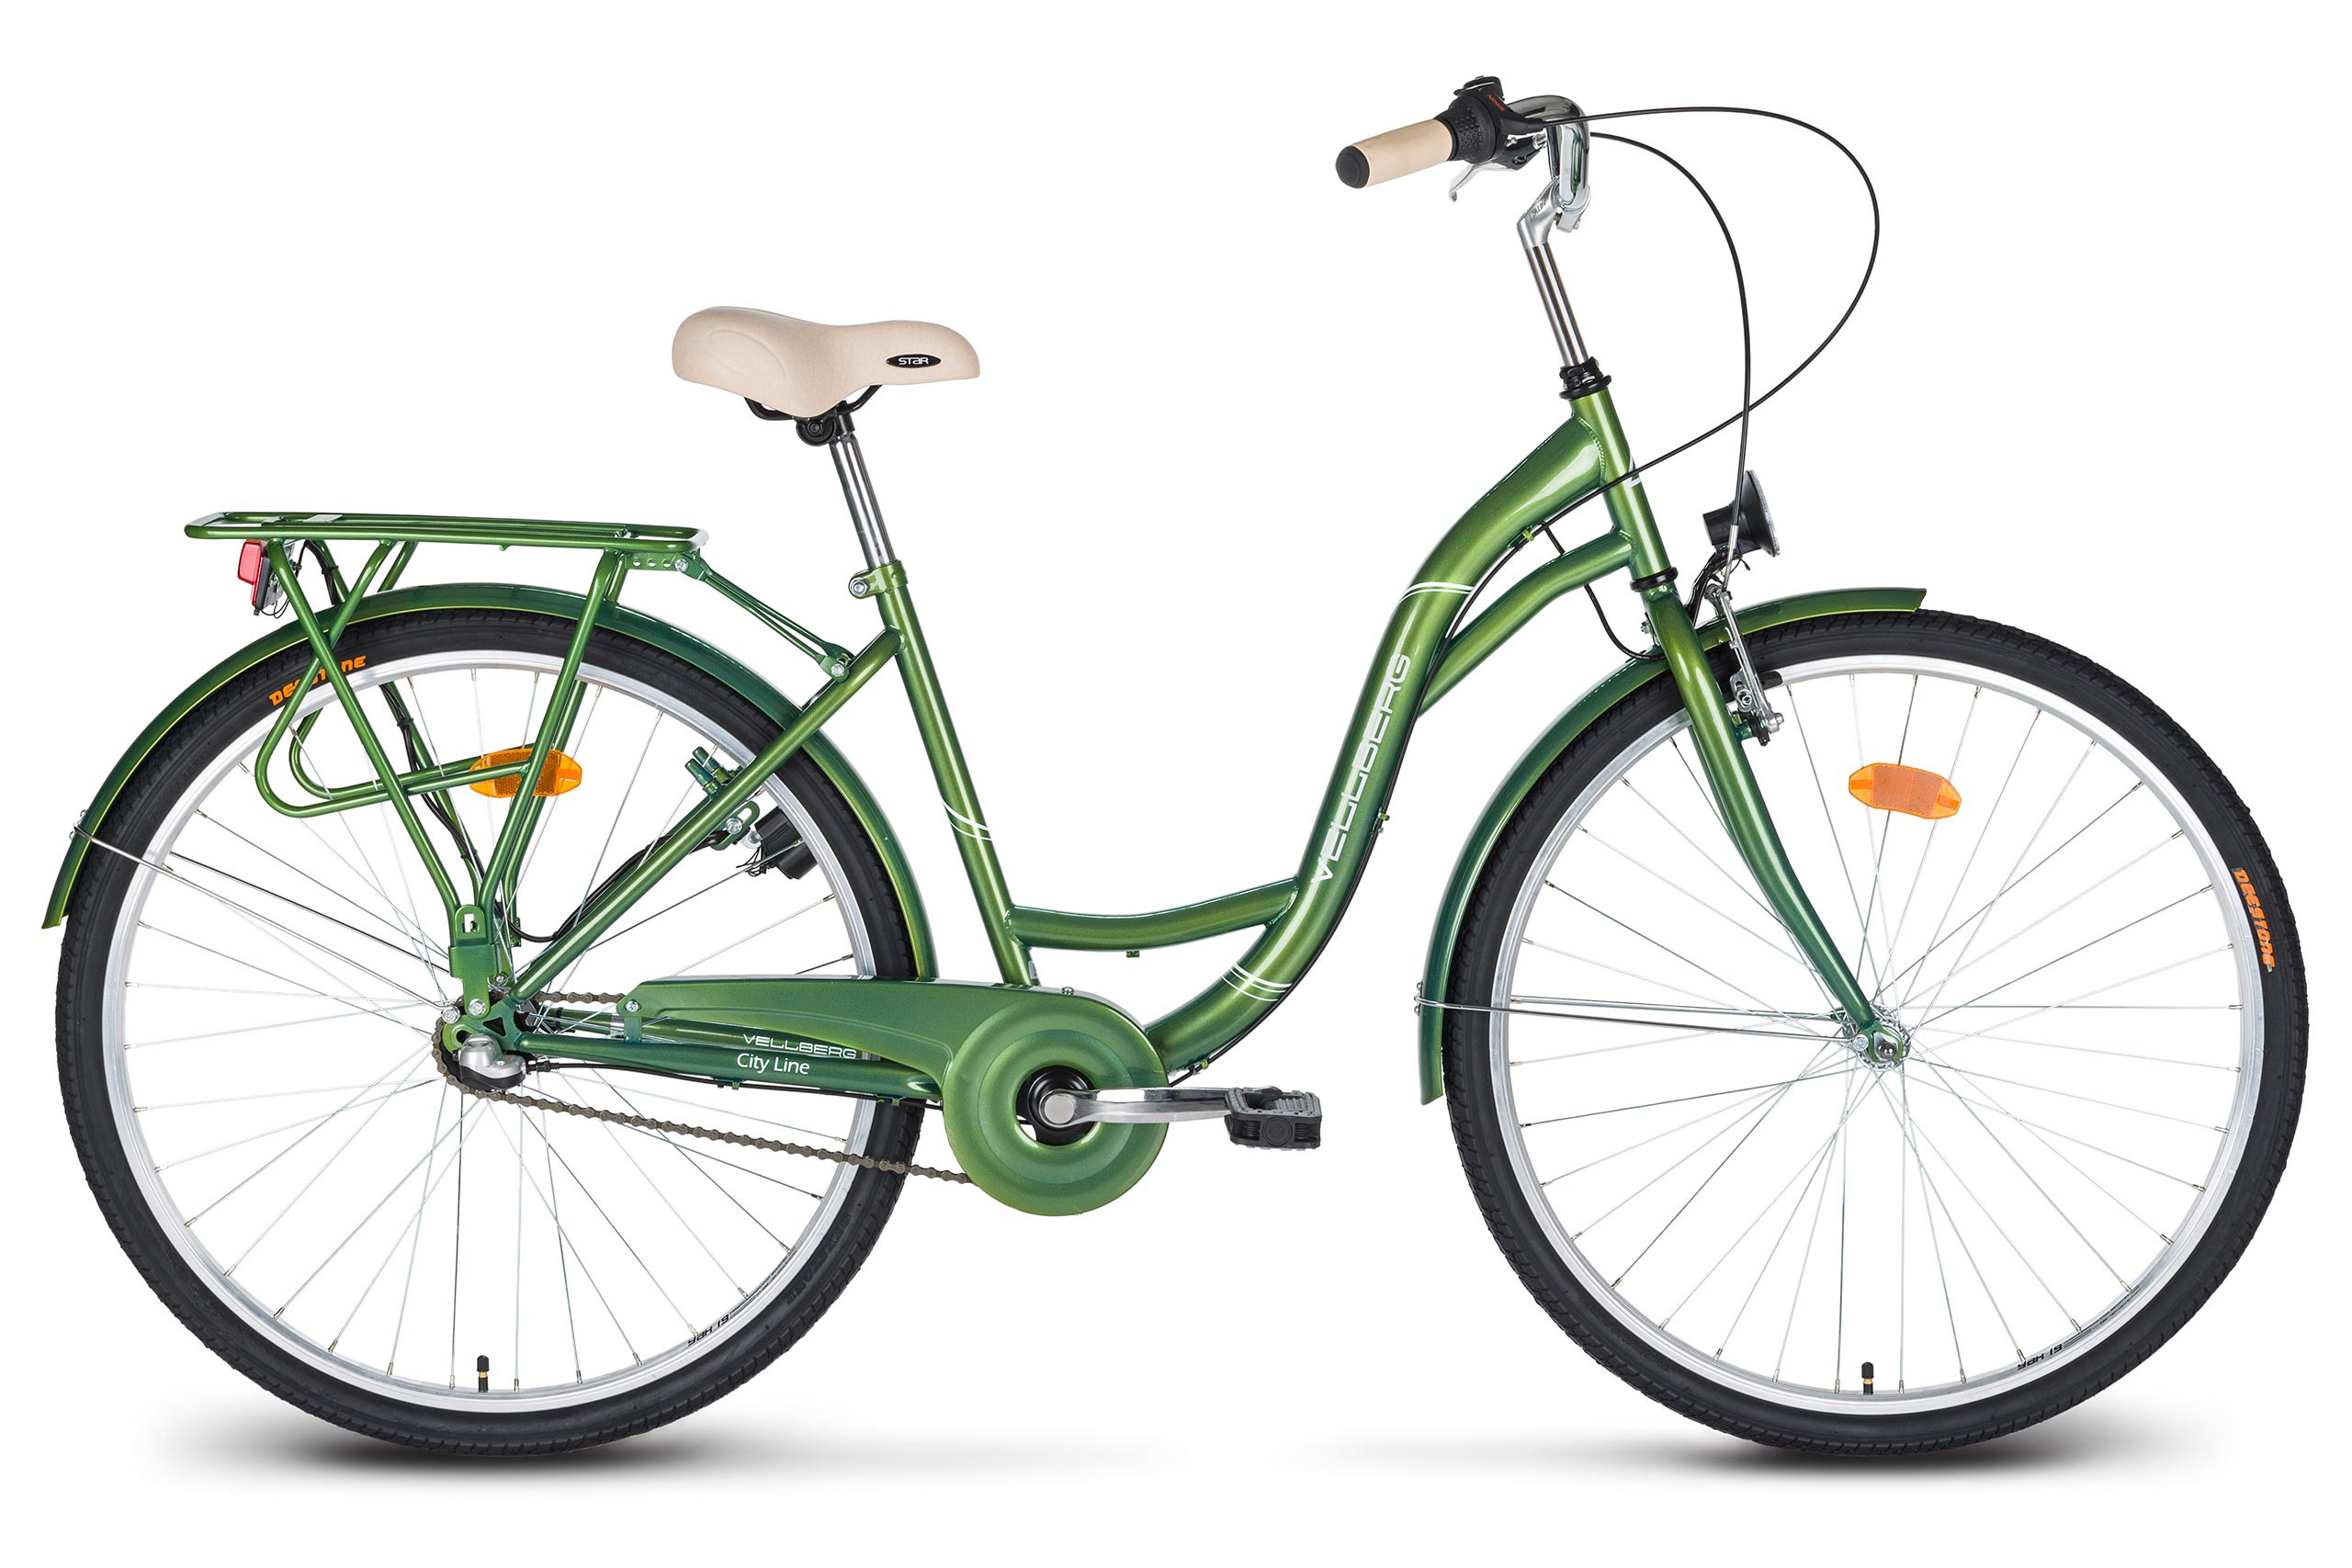 Купить велосипед улан. Altair City line 28. Altair City 28 зеленый серый. Городской велосипед Аист ck9-344. Городской велосипед с планетарной втулкой.